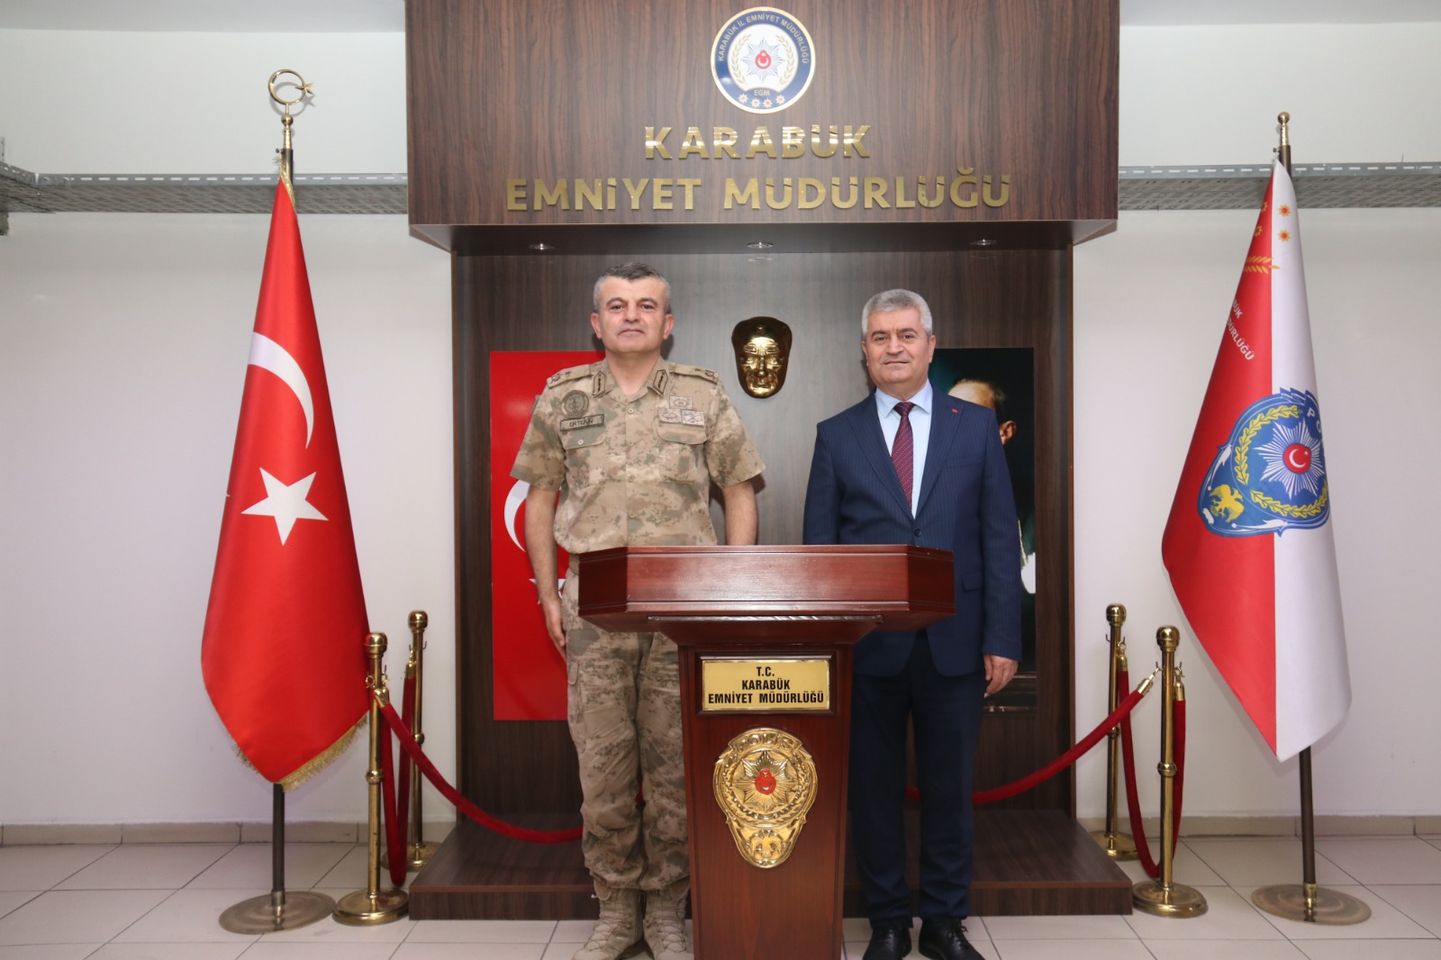 Bilecik Jandarma Eğitim Komutanı Tuğgeneral Uğur Ertekin, Karabük Emniyet Müdürlüğü'nü Ziyaret Etti